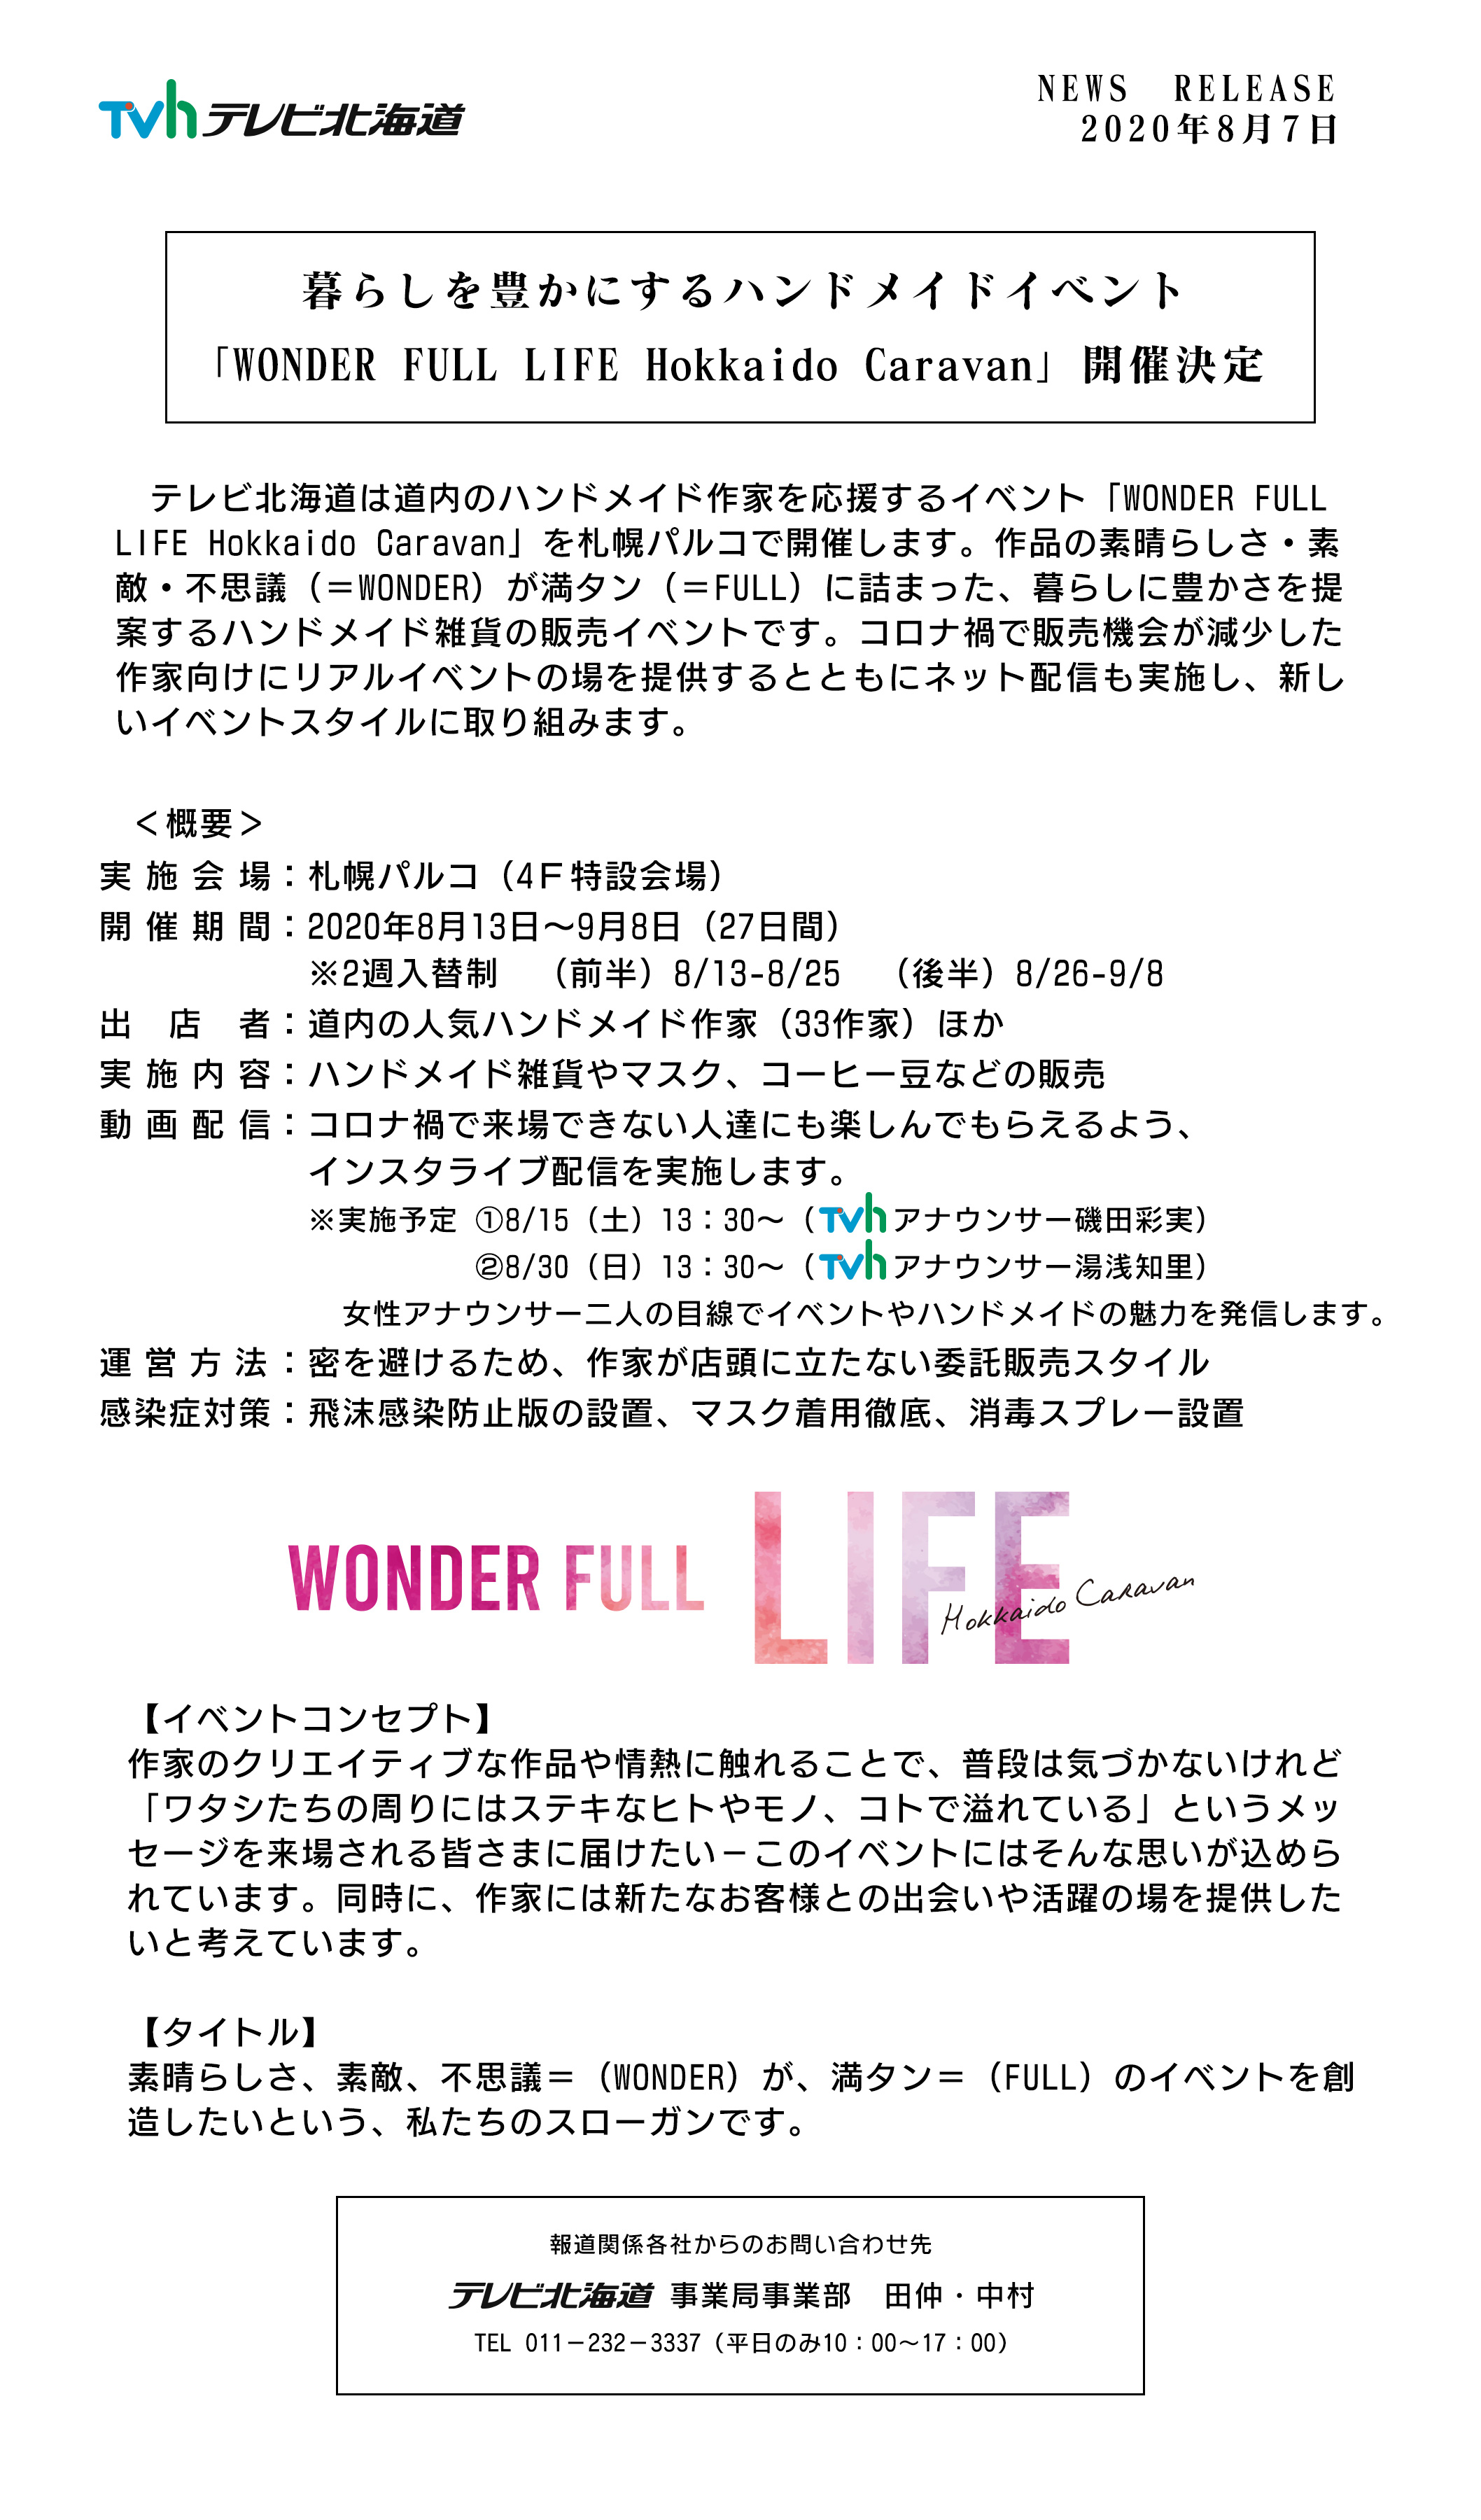 暮らしを豊かにするハンドメイドイベント「WONDER FULL LIFE Hokkaido Caravan」開催決定